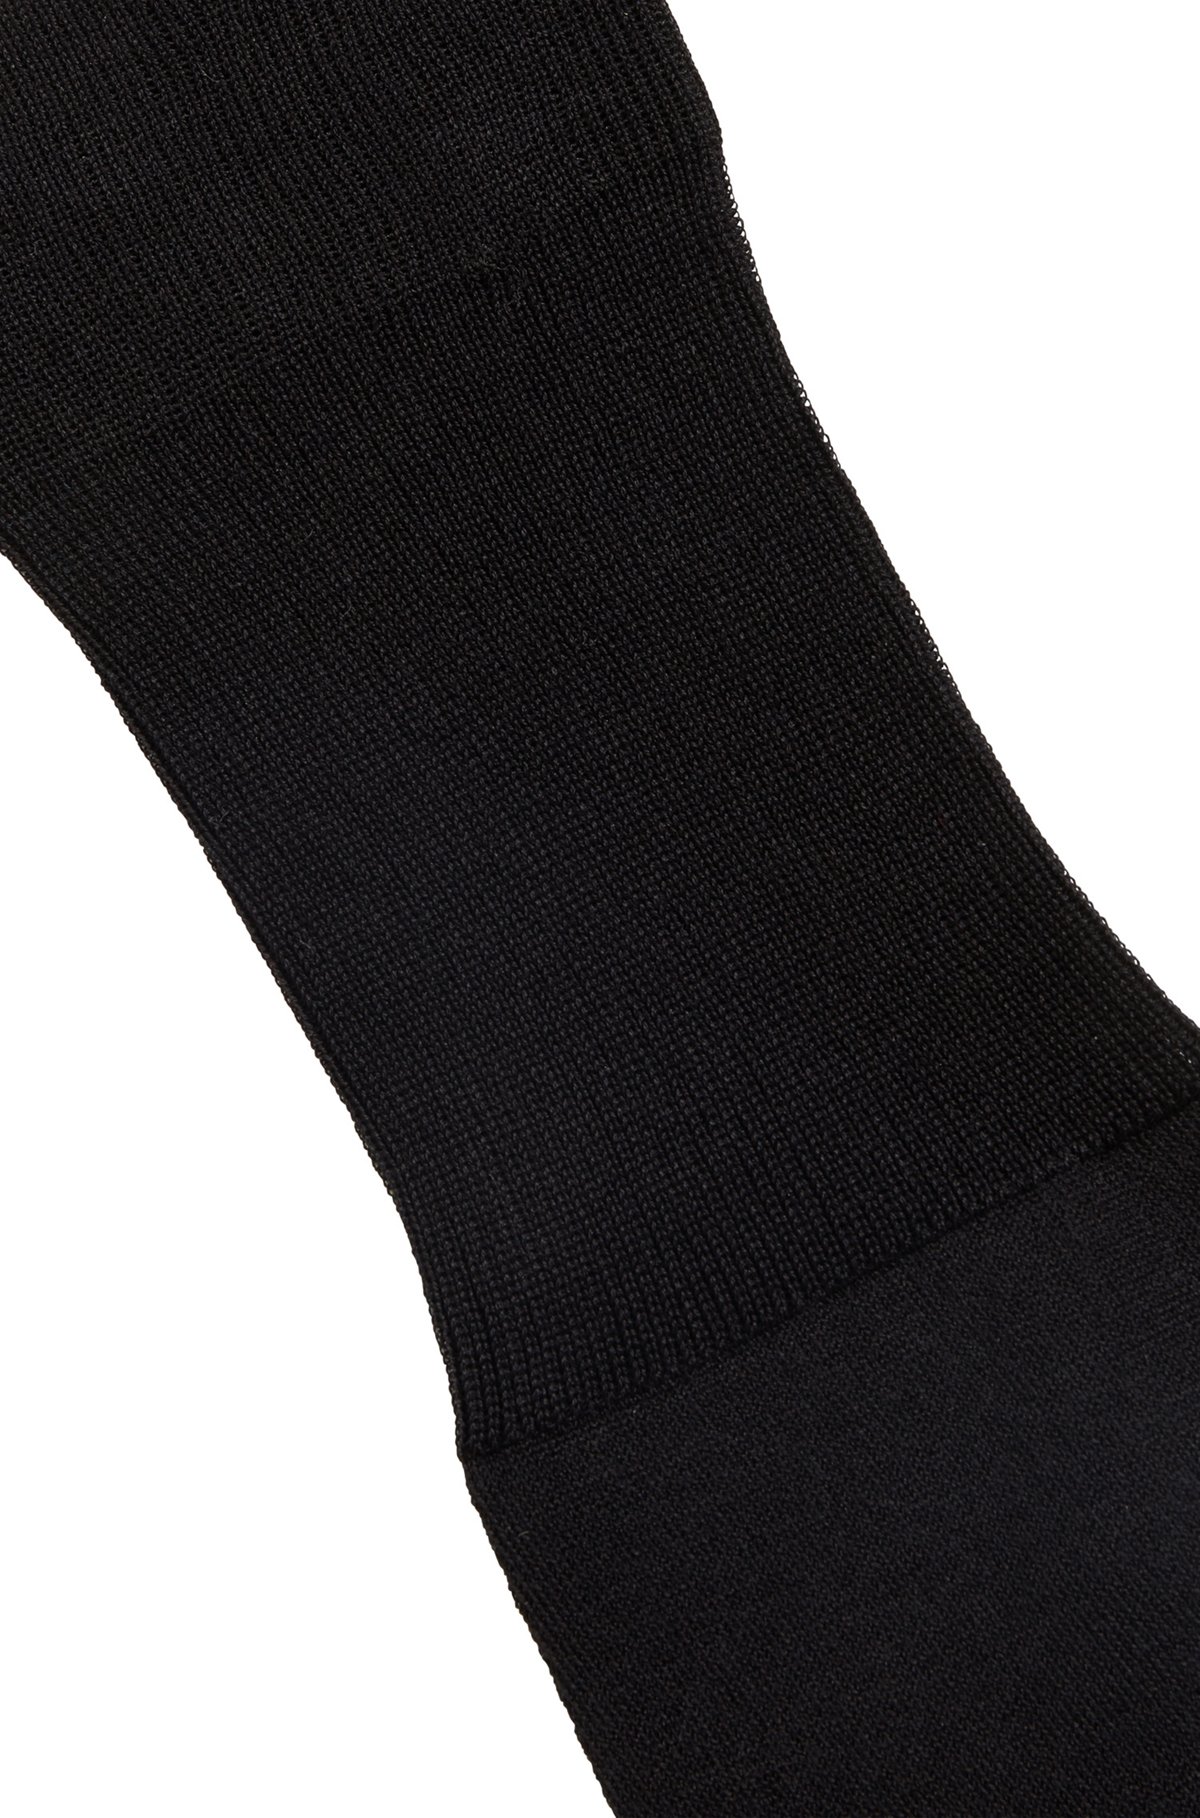 Calcetines por la rodilla en algodón egipcio mercerizado con elástico, Negro